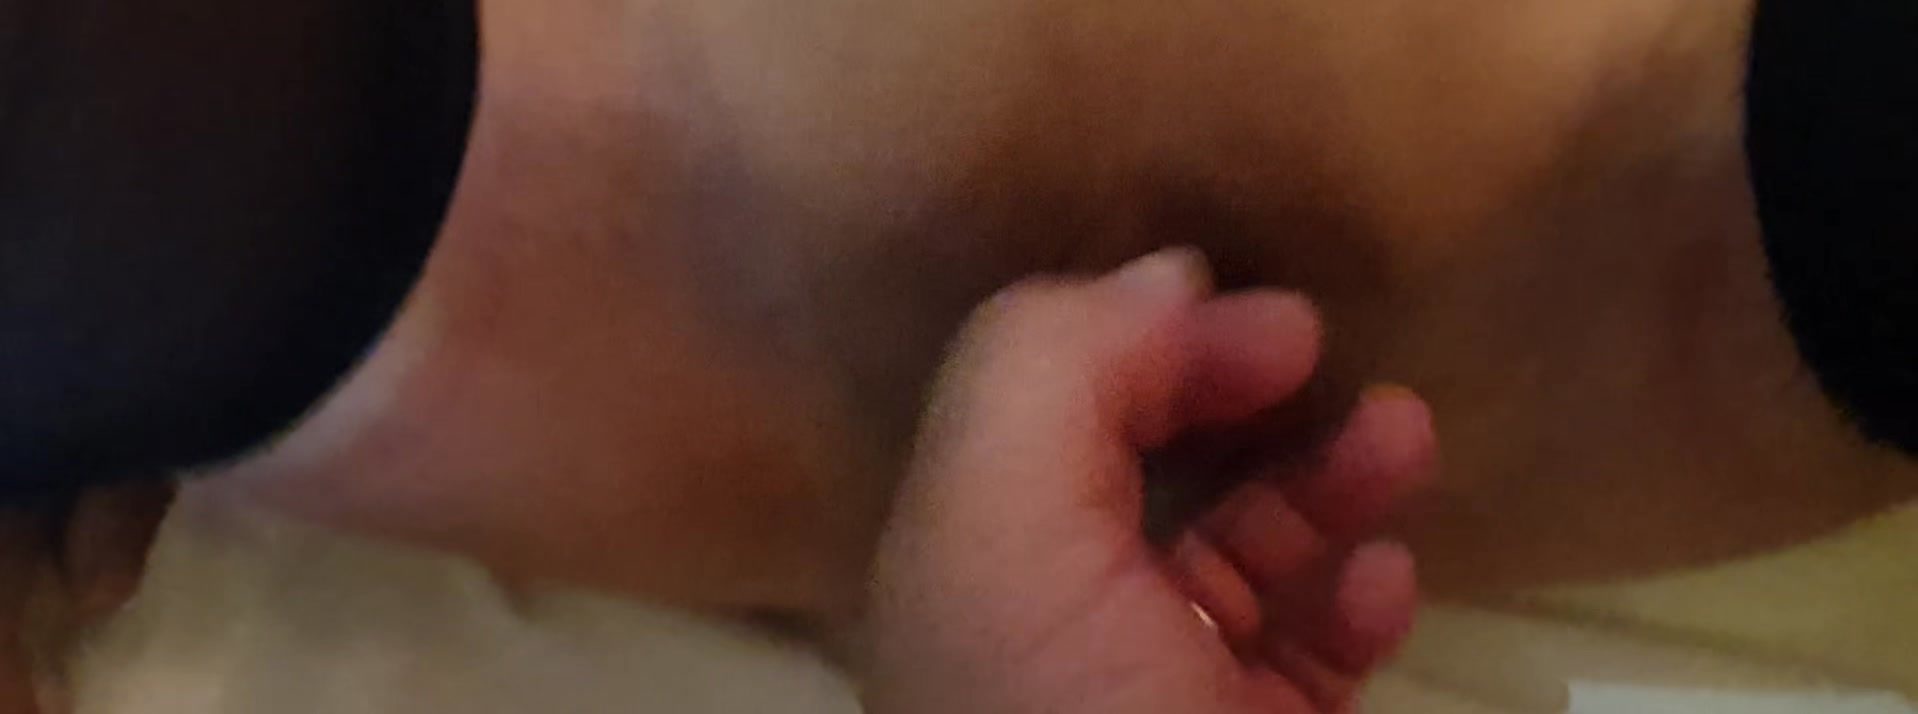 мама засунула палец свой в жопу сына фото 43